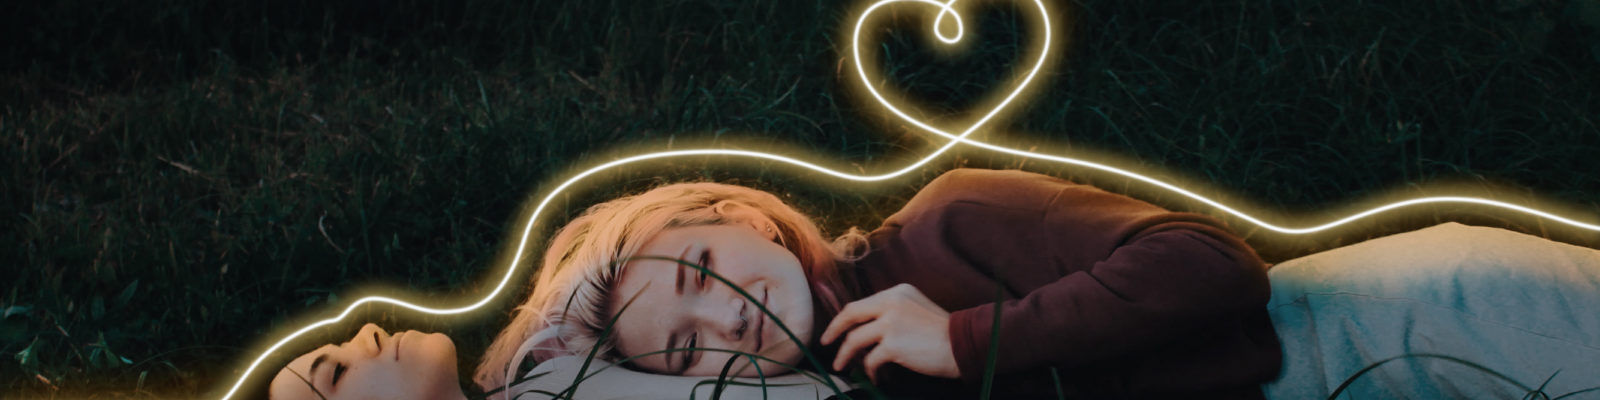 Två tjejer på en gräsmatta med ett ljusflöde som ett hjärta